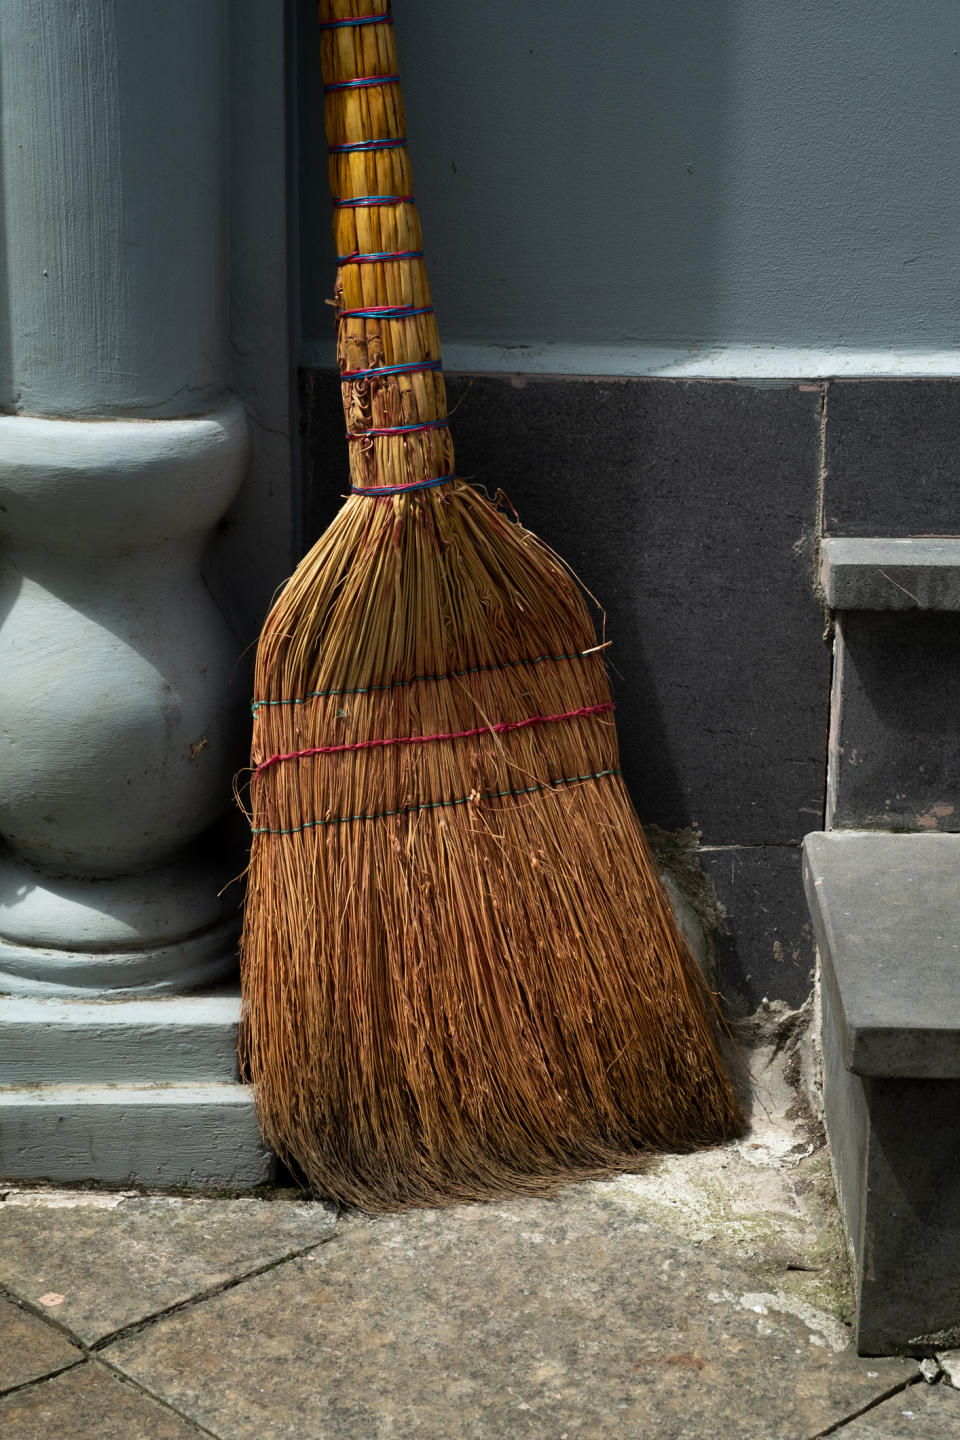 Closeup of a broom